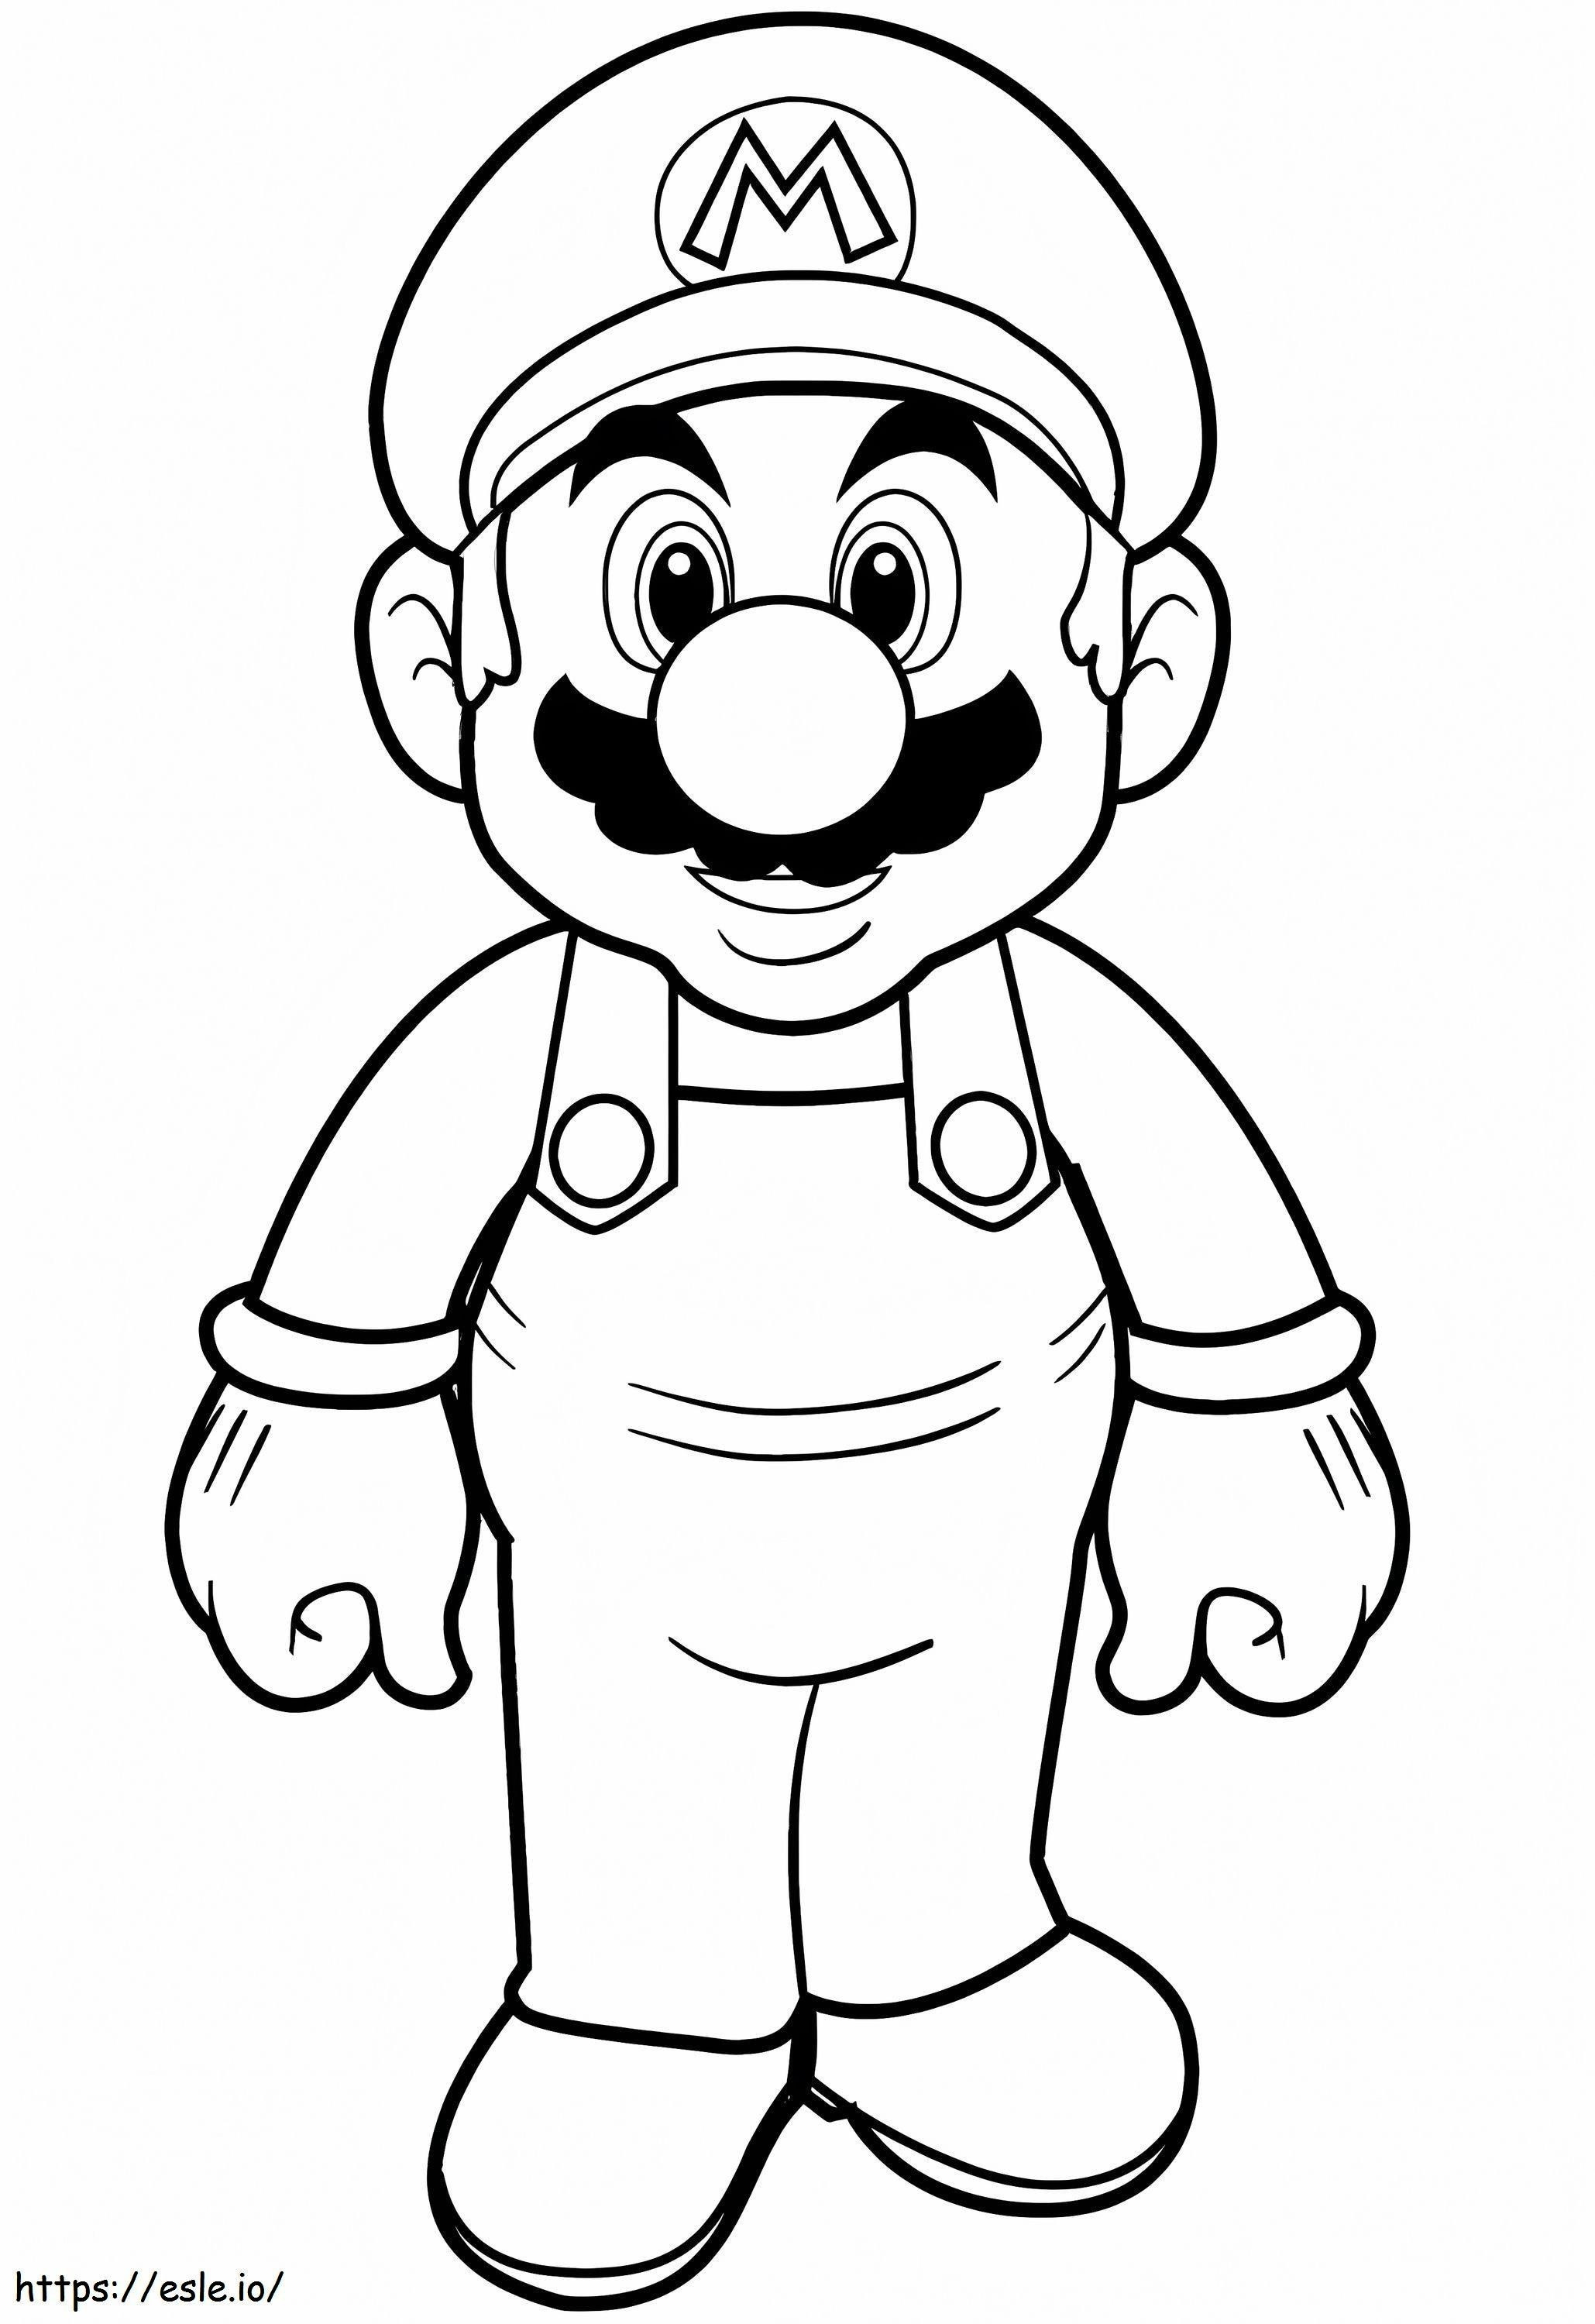 1577673400 Super Mario coloring page